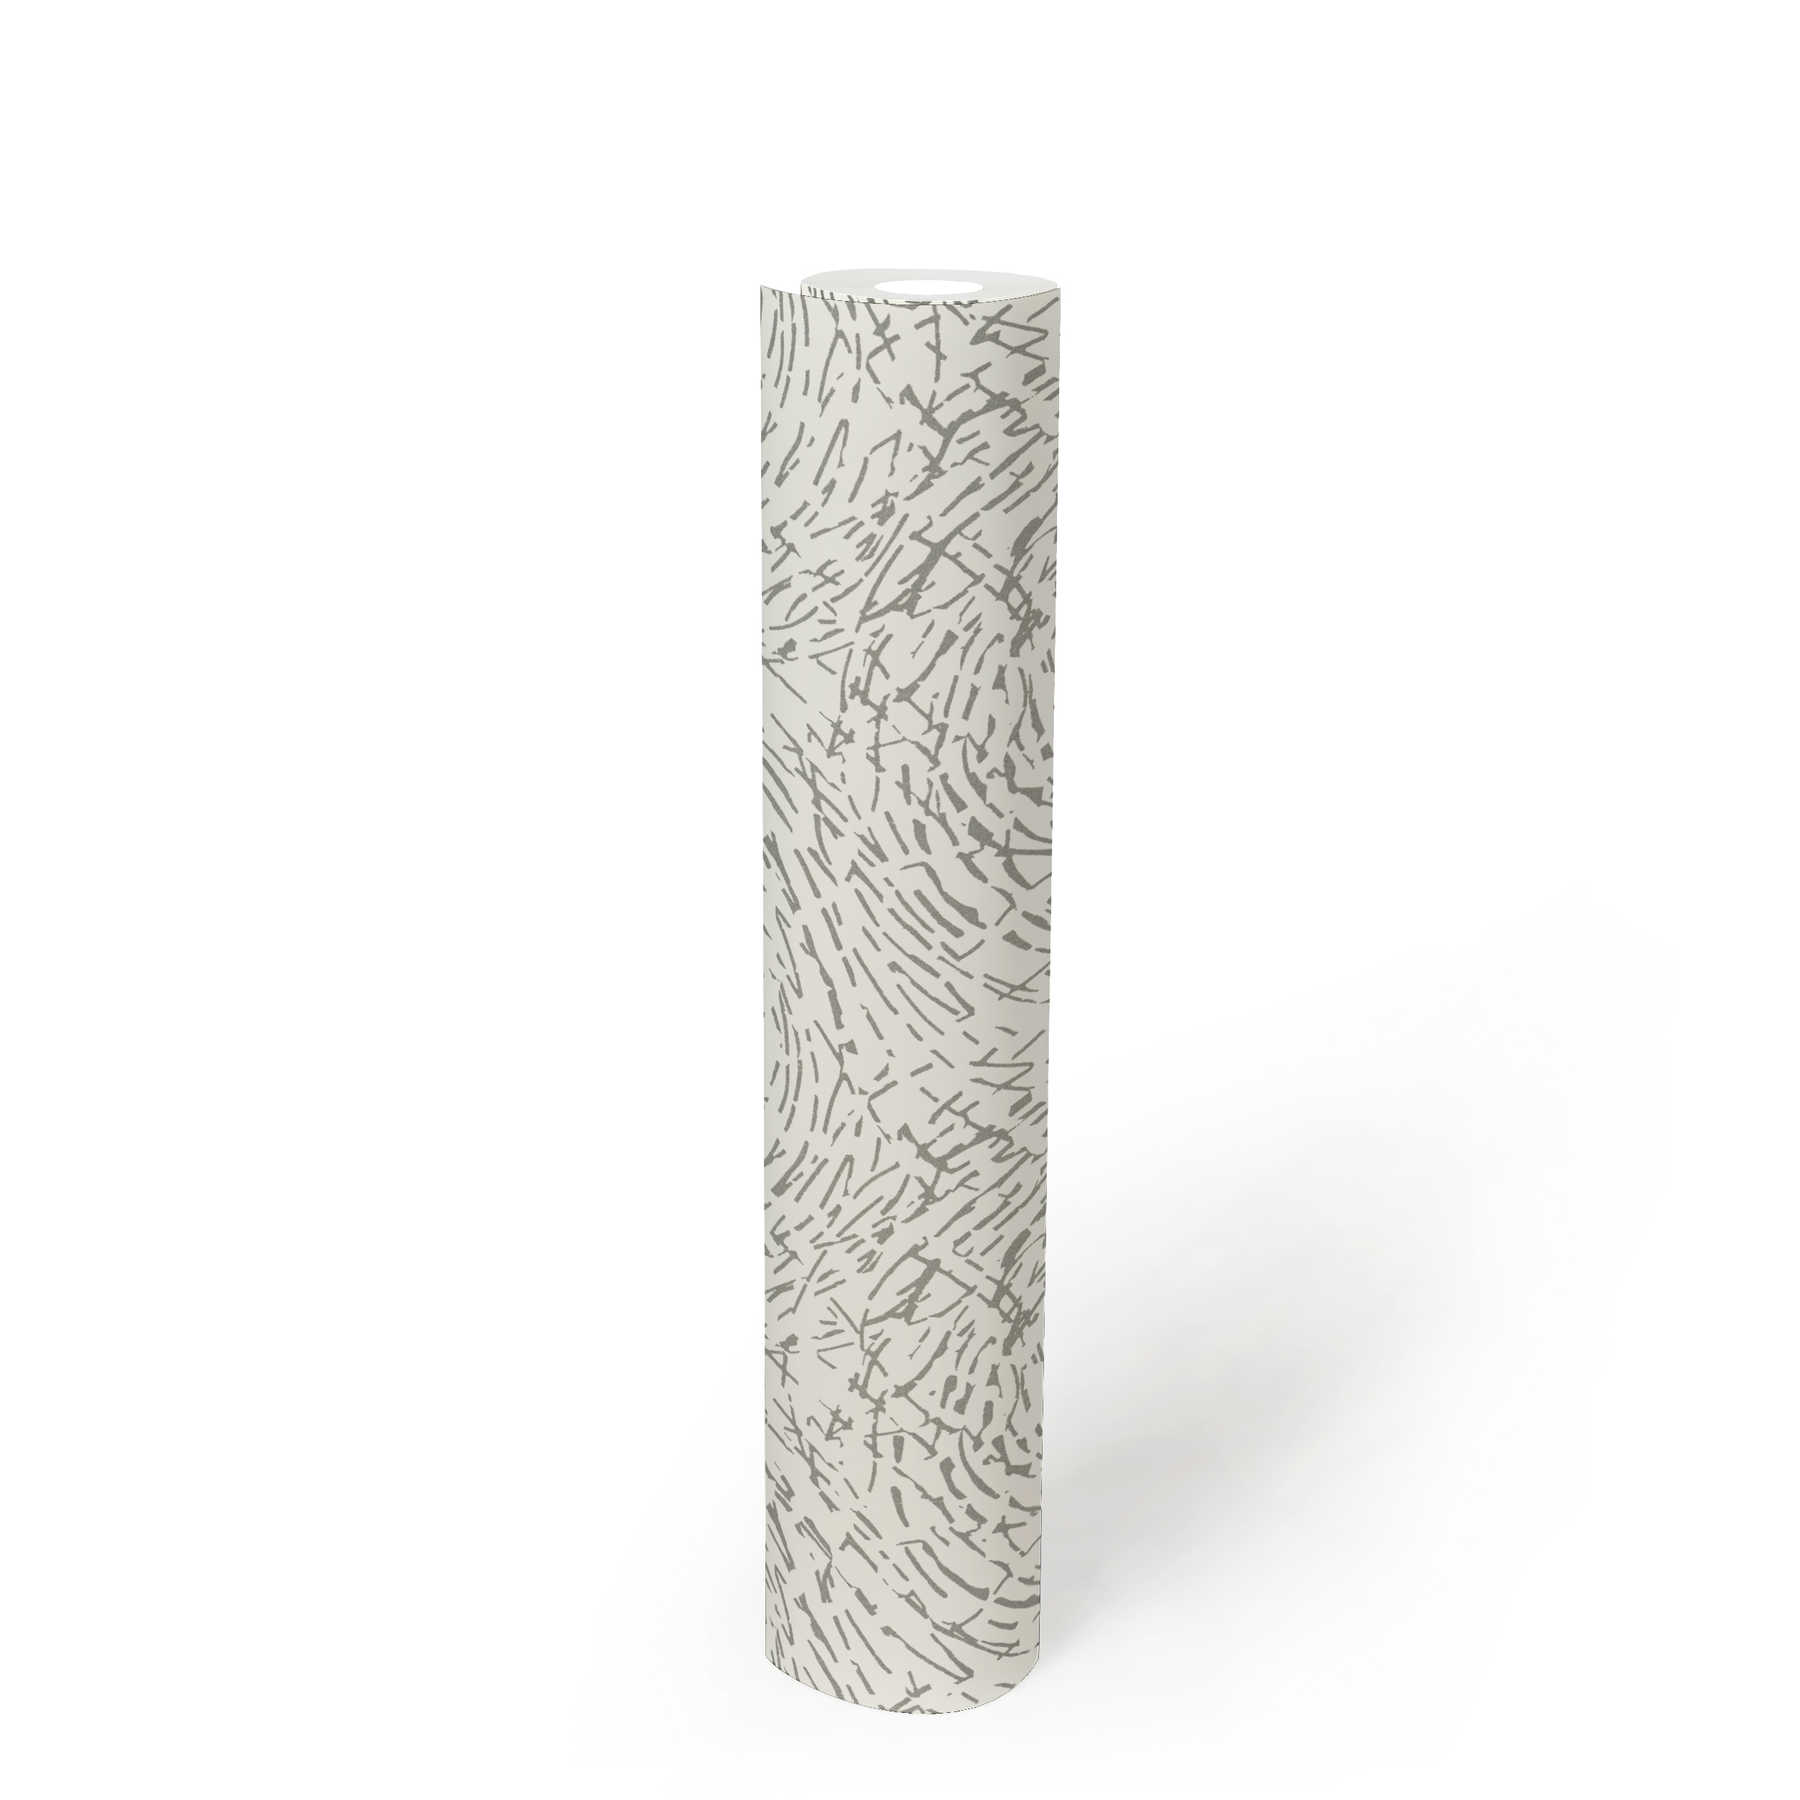             Onderlaag behang etnisch design met metallic kleur & structuur design - zilver, wit
        